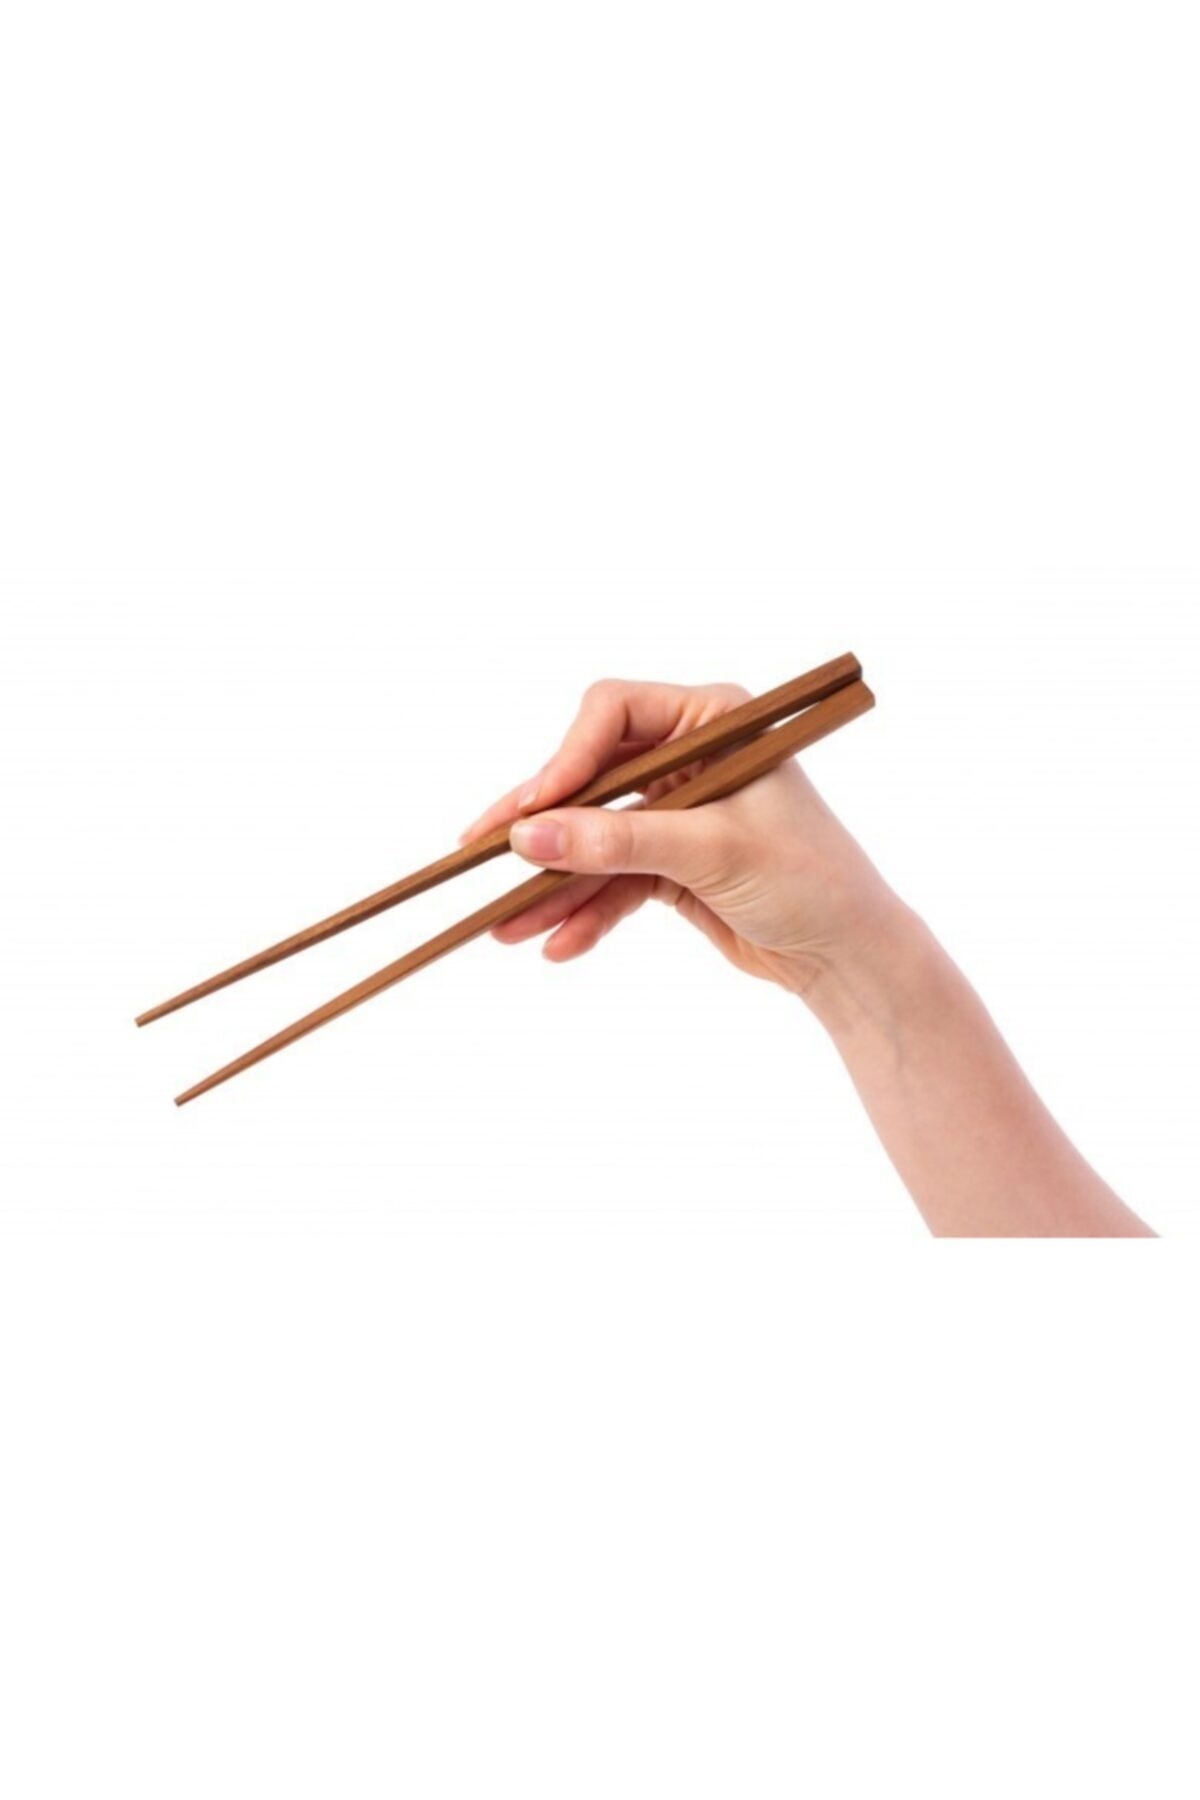 10 Çift Çin Çubukları Chopsticks